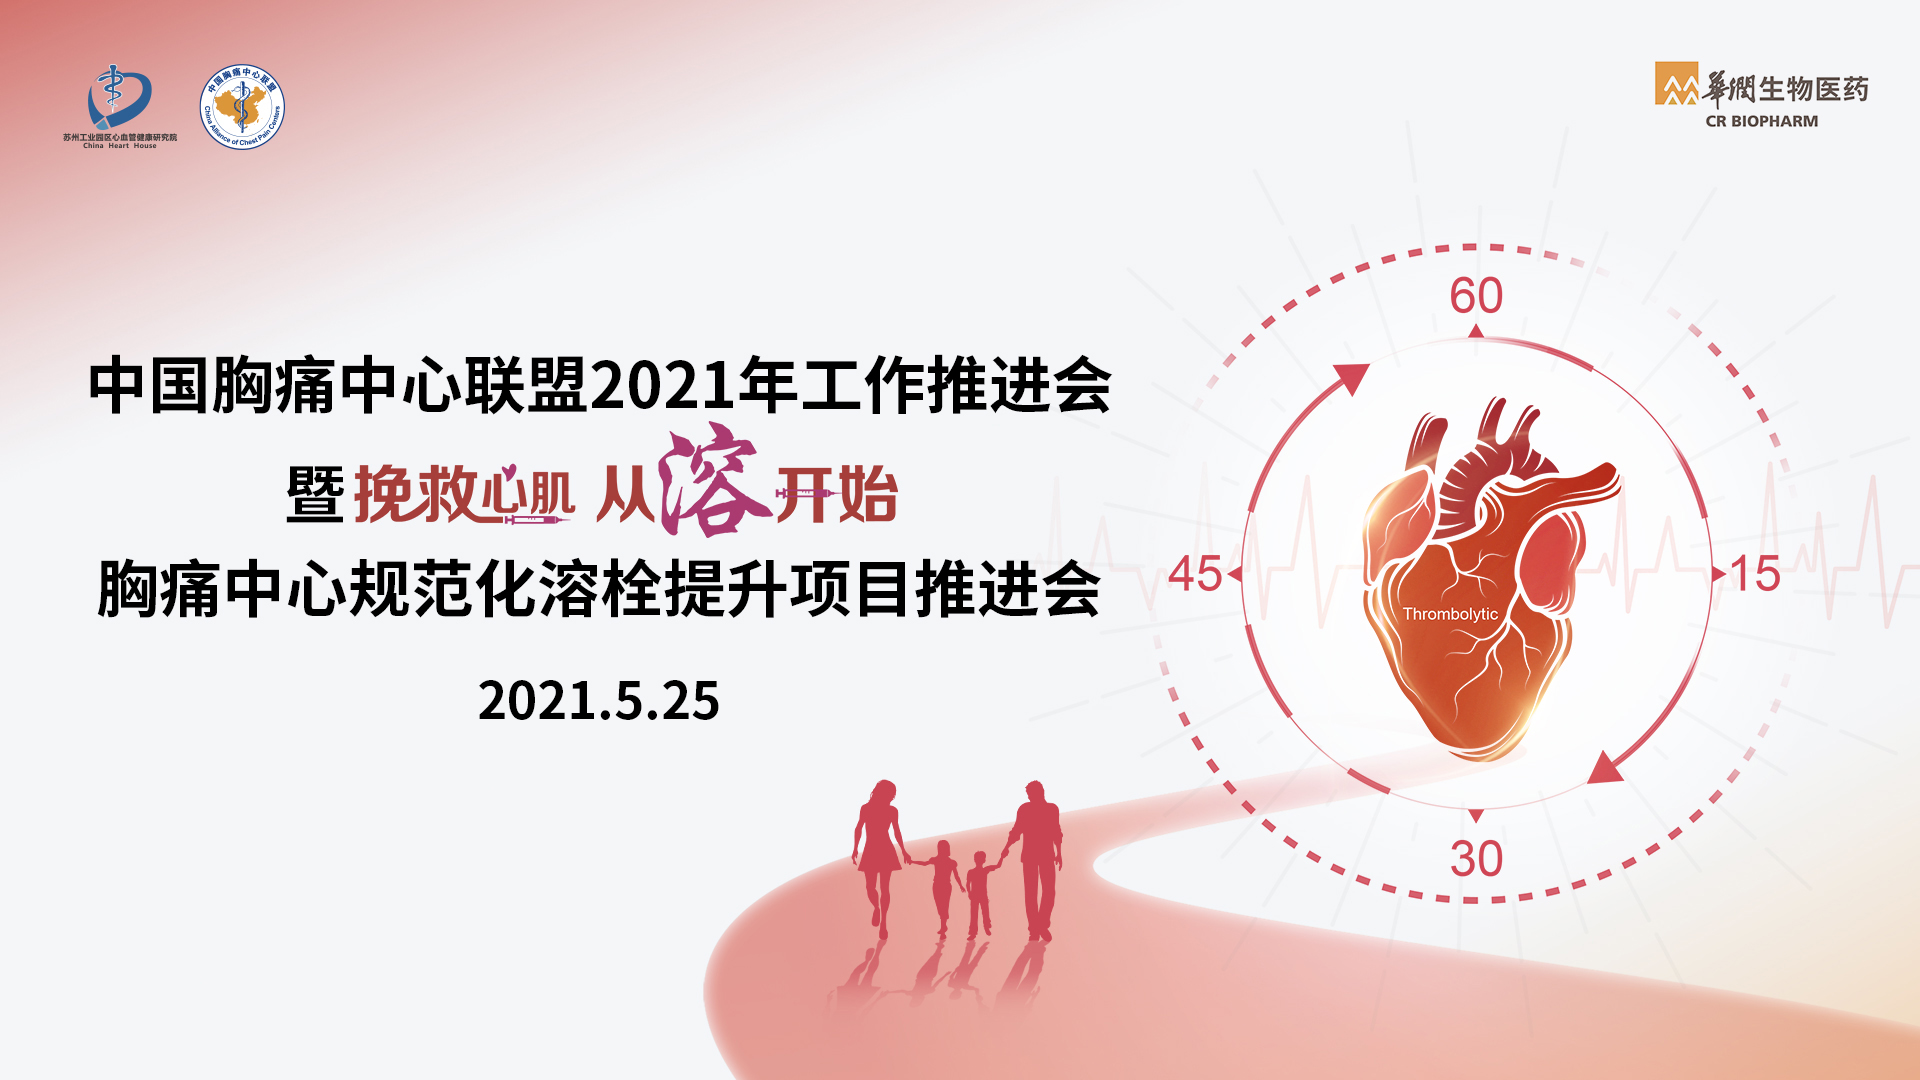 中国胸痛中心联盟2021年工作推进会
暨挽救心肌 从溶开始 胸痛中心规范化溶栓提升项目启动会